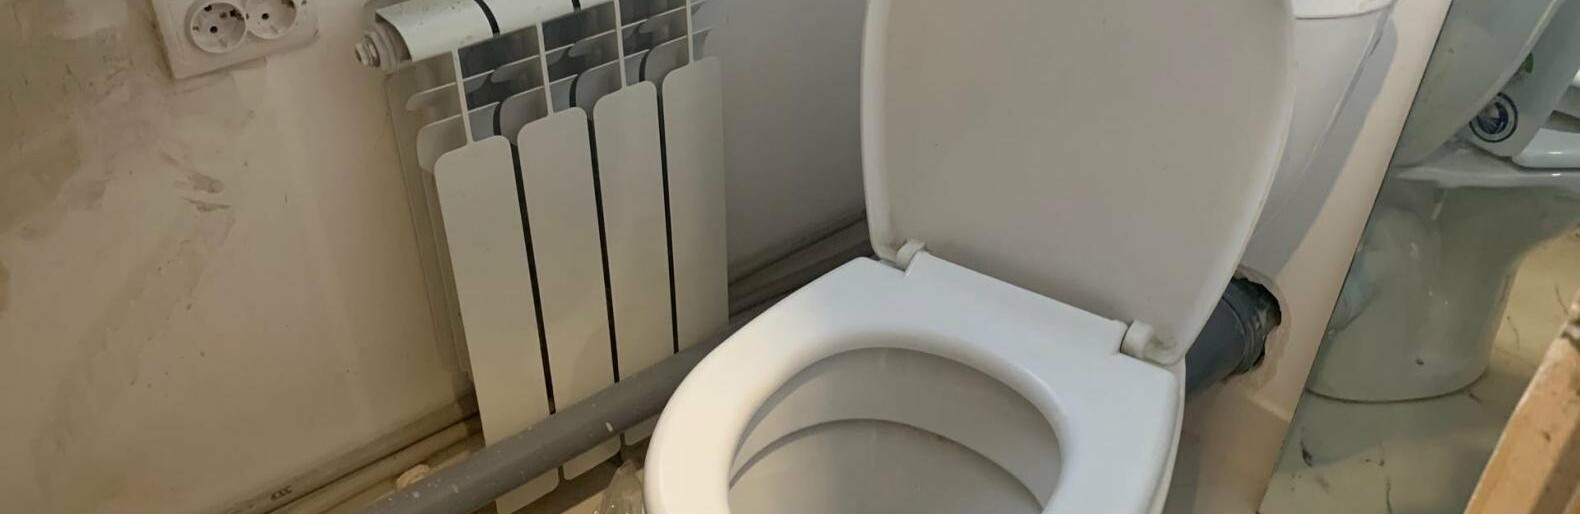 Бюджетники из Белгородской области жалуются на принудительное мытьё туалетов в воинских частях 